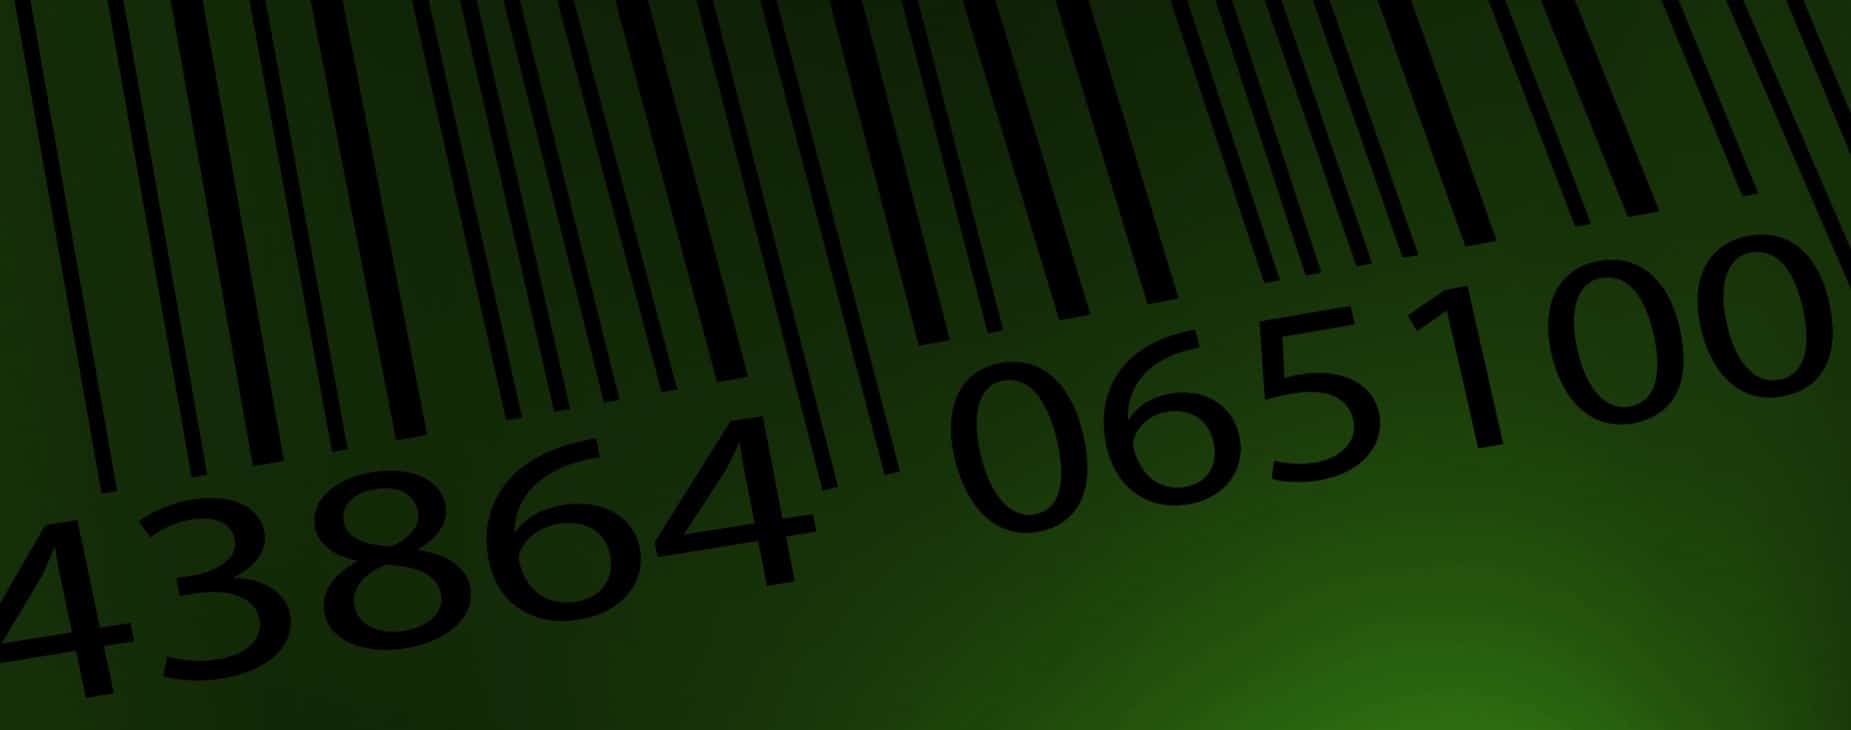 Fixed asset software barcode